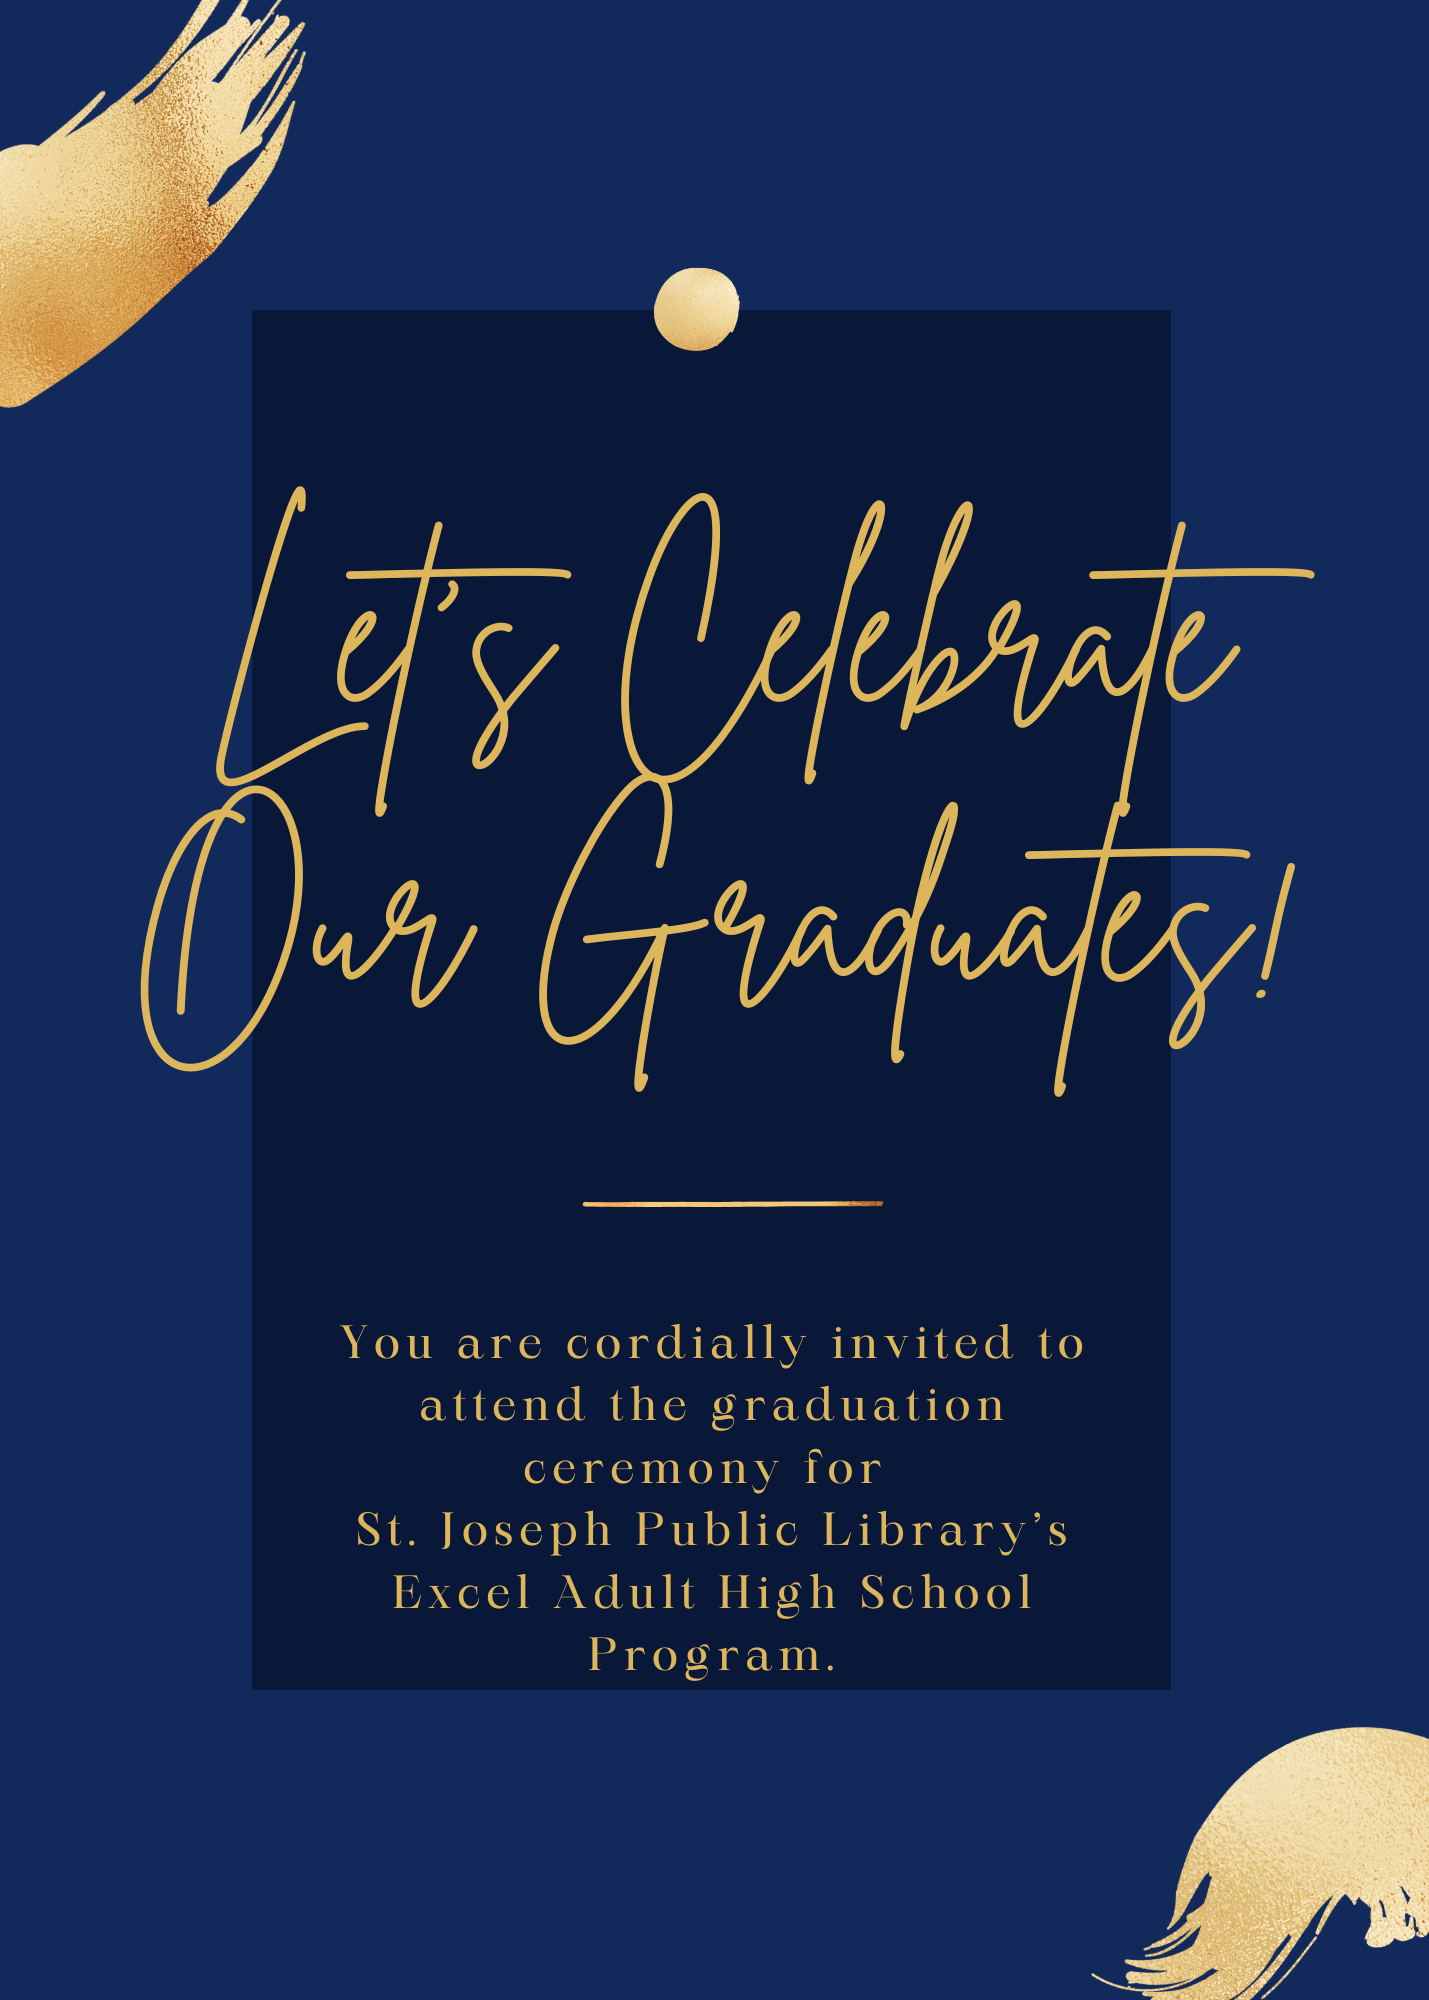 Let's Celebrate Our Graduates!